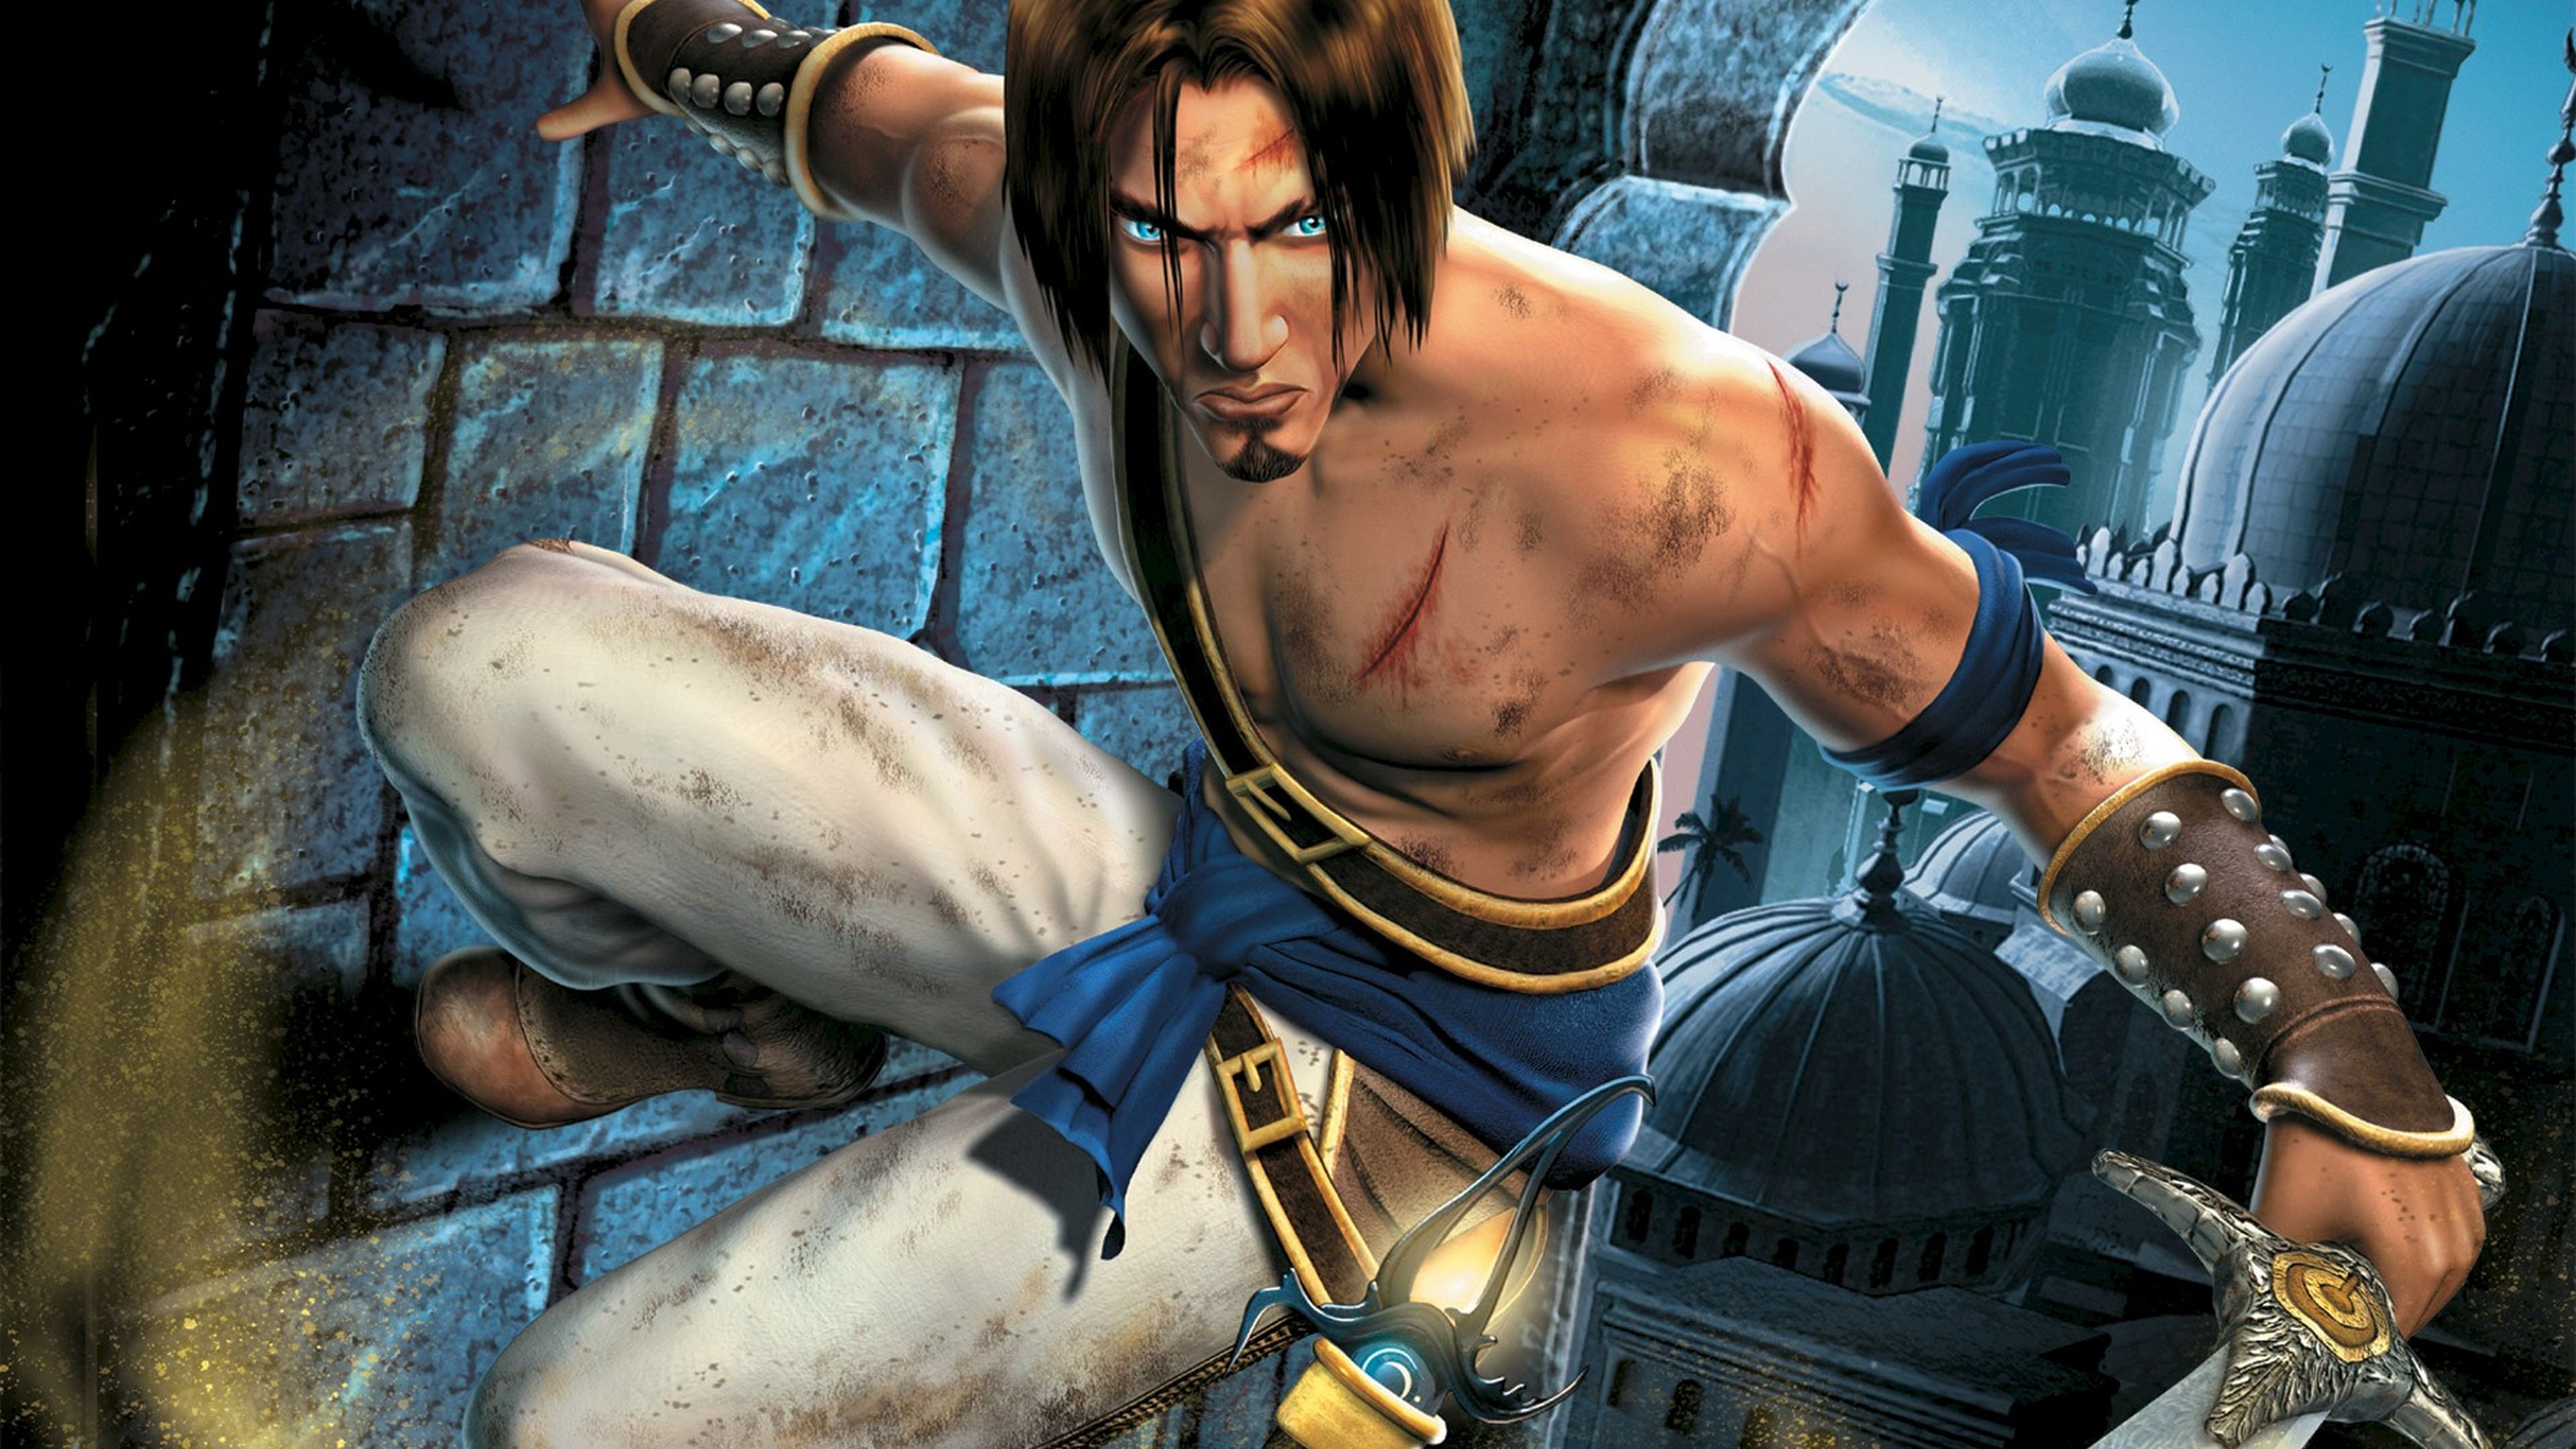 Un remake del primer Prince of Persia en 2D podría llegar este año